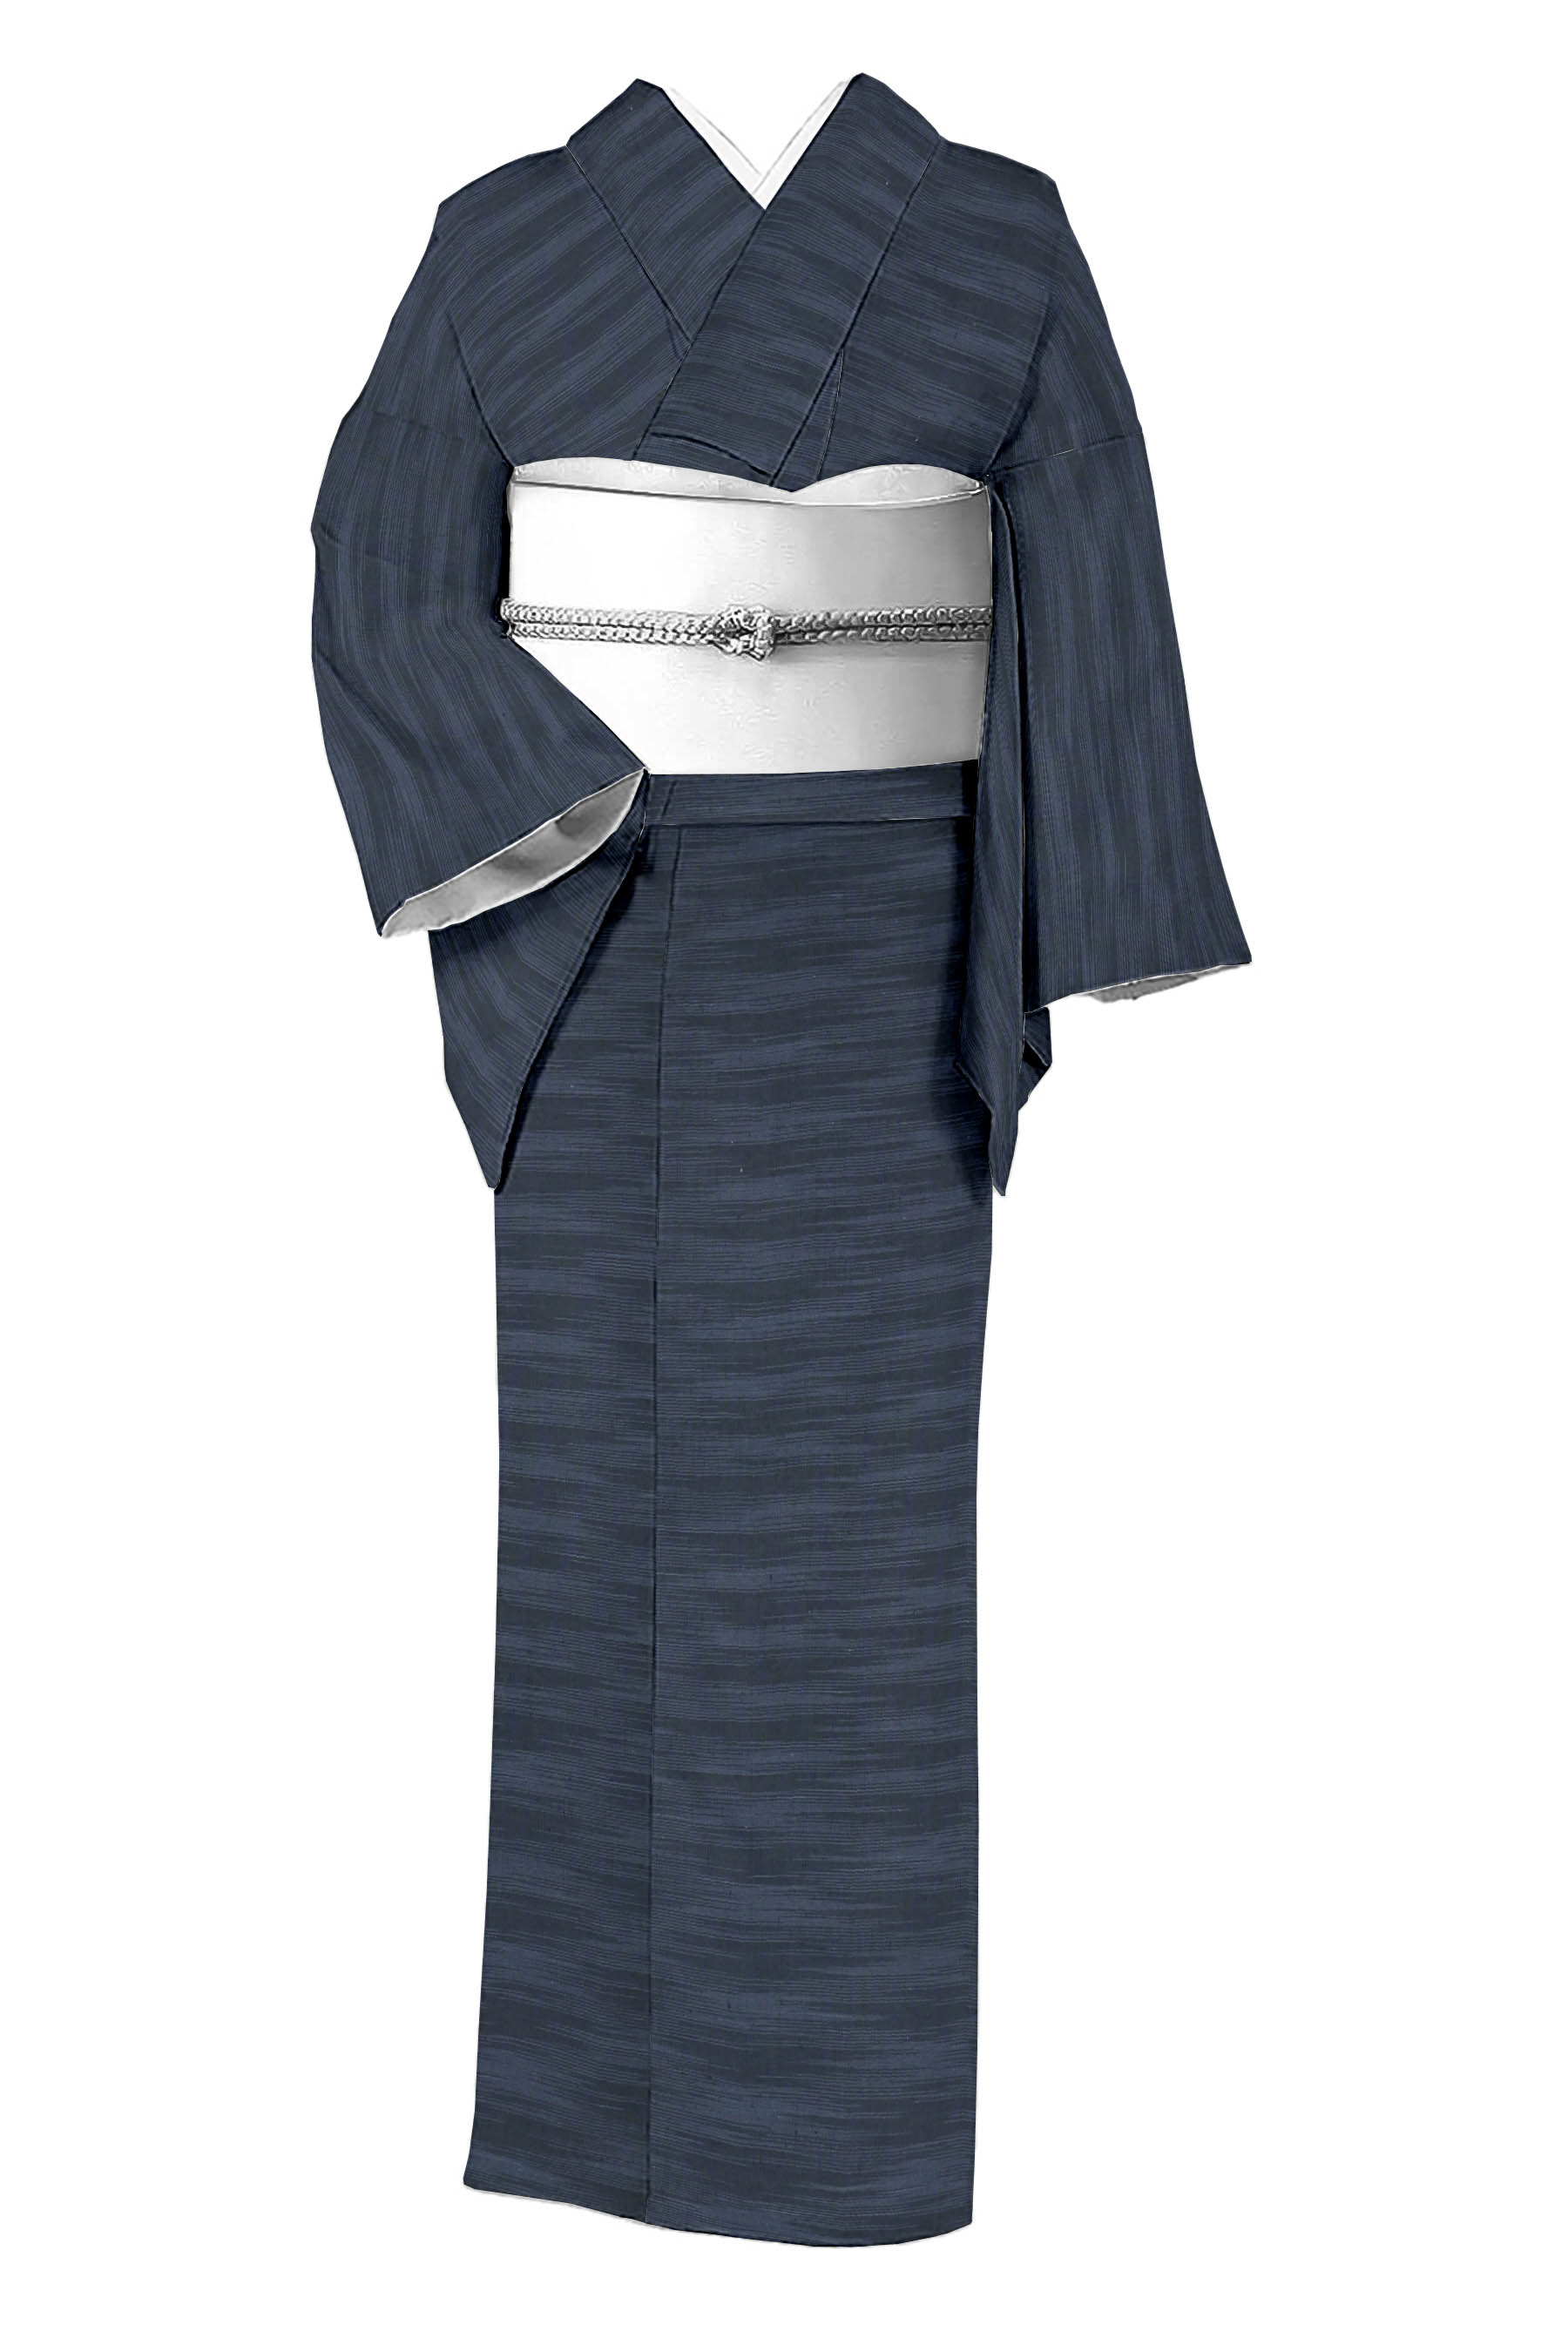 絹100％ 夏のきもの 伝統工芸品 明石ちぢみ 十日町織物 - 女性和服、着物